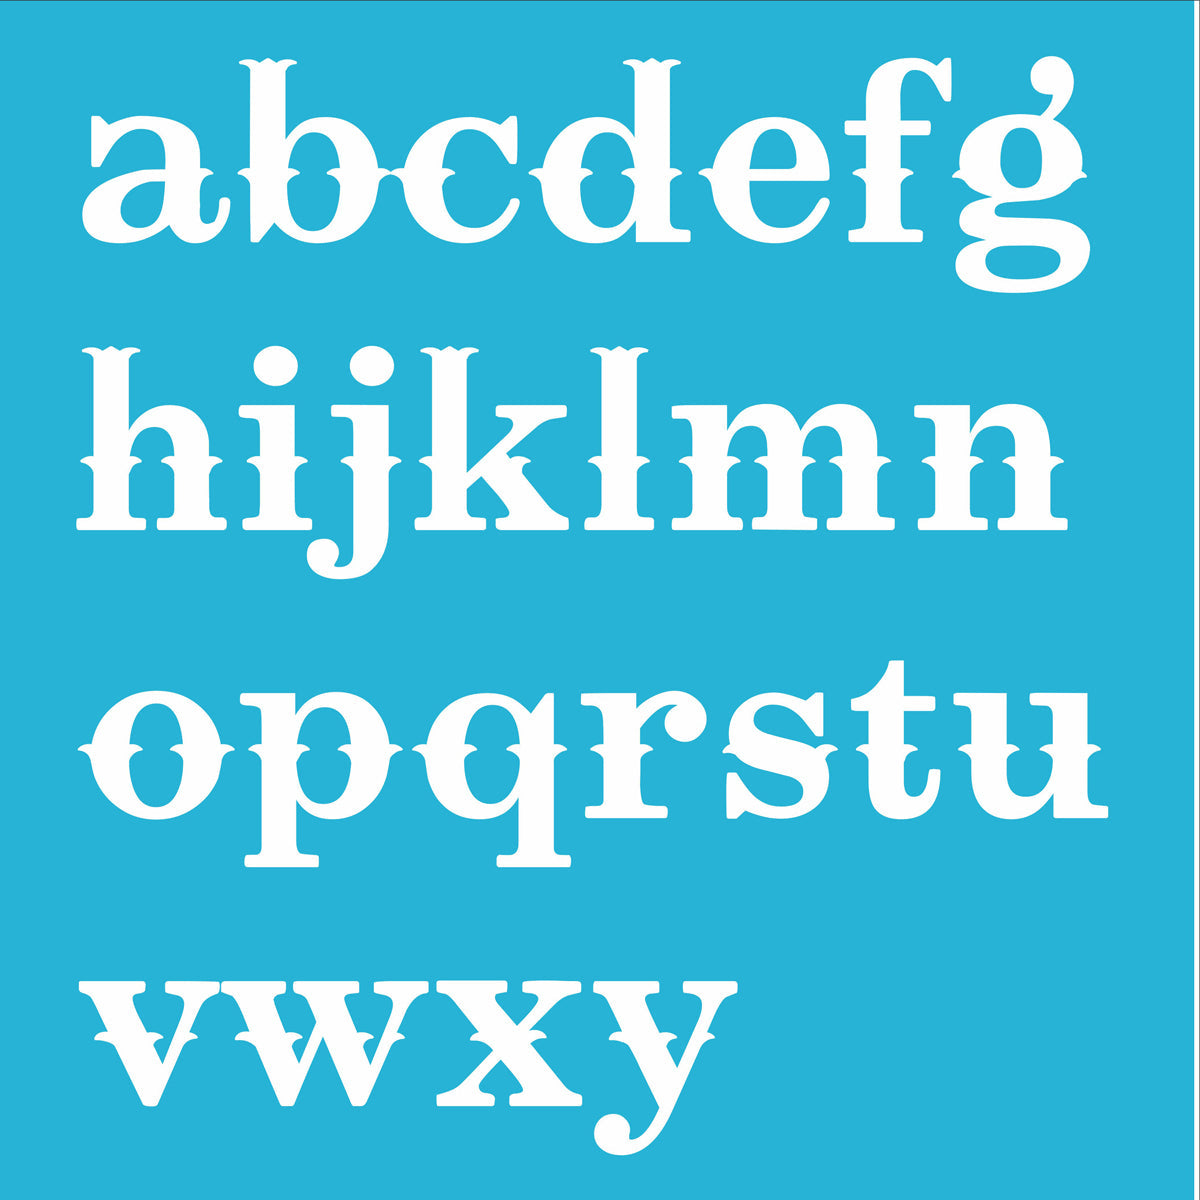 Alphabet Stencil - Reusable Stencils okla- lower case letters A-Z - Superior Stencils